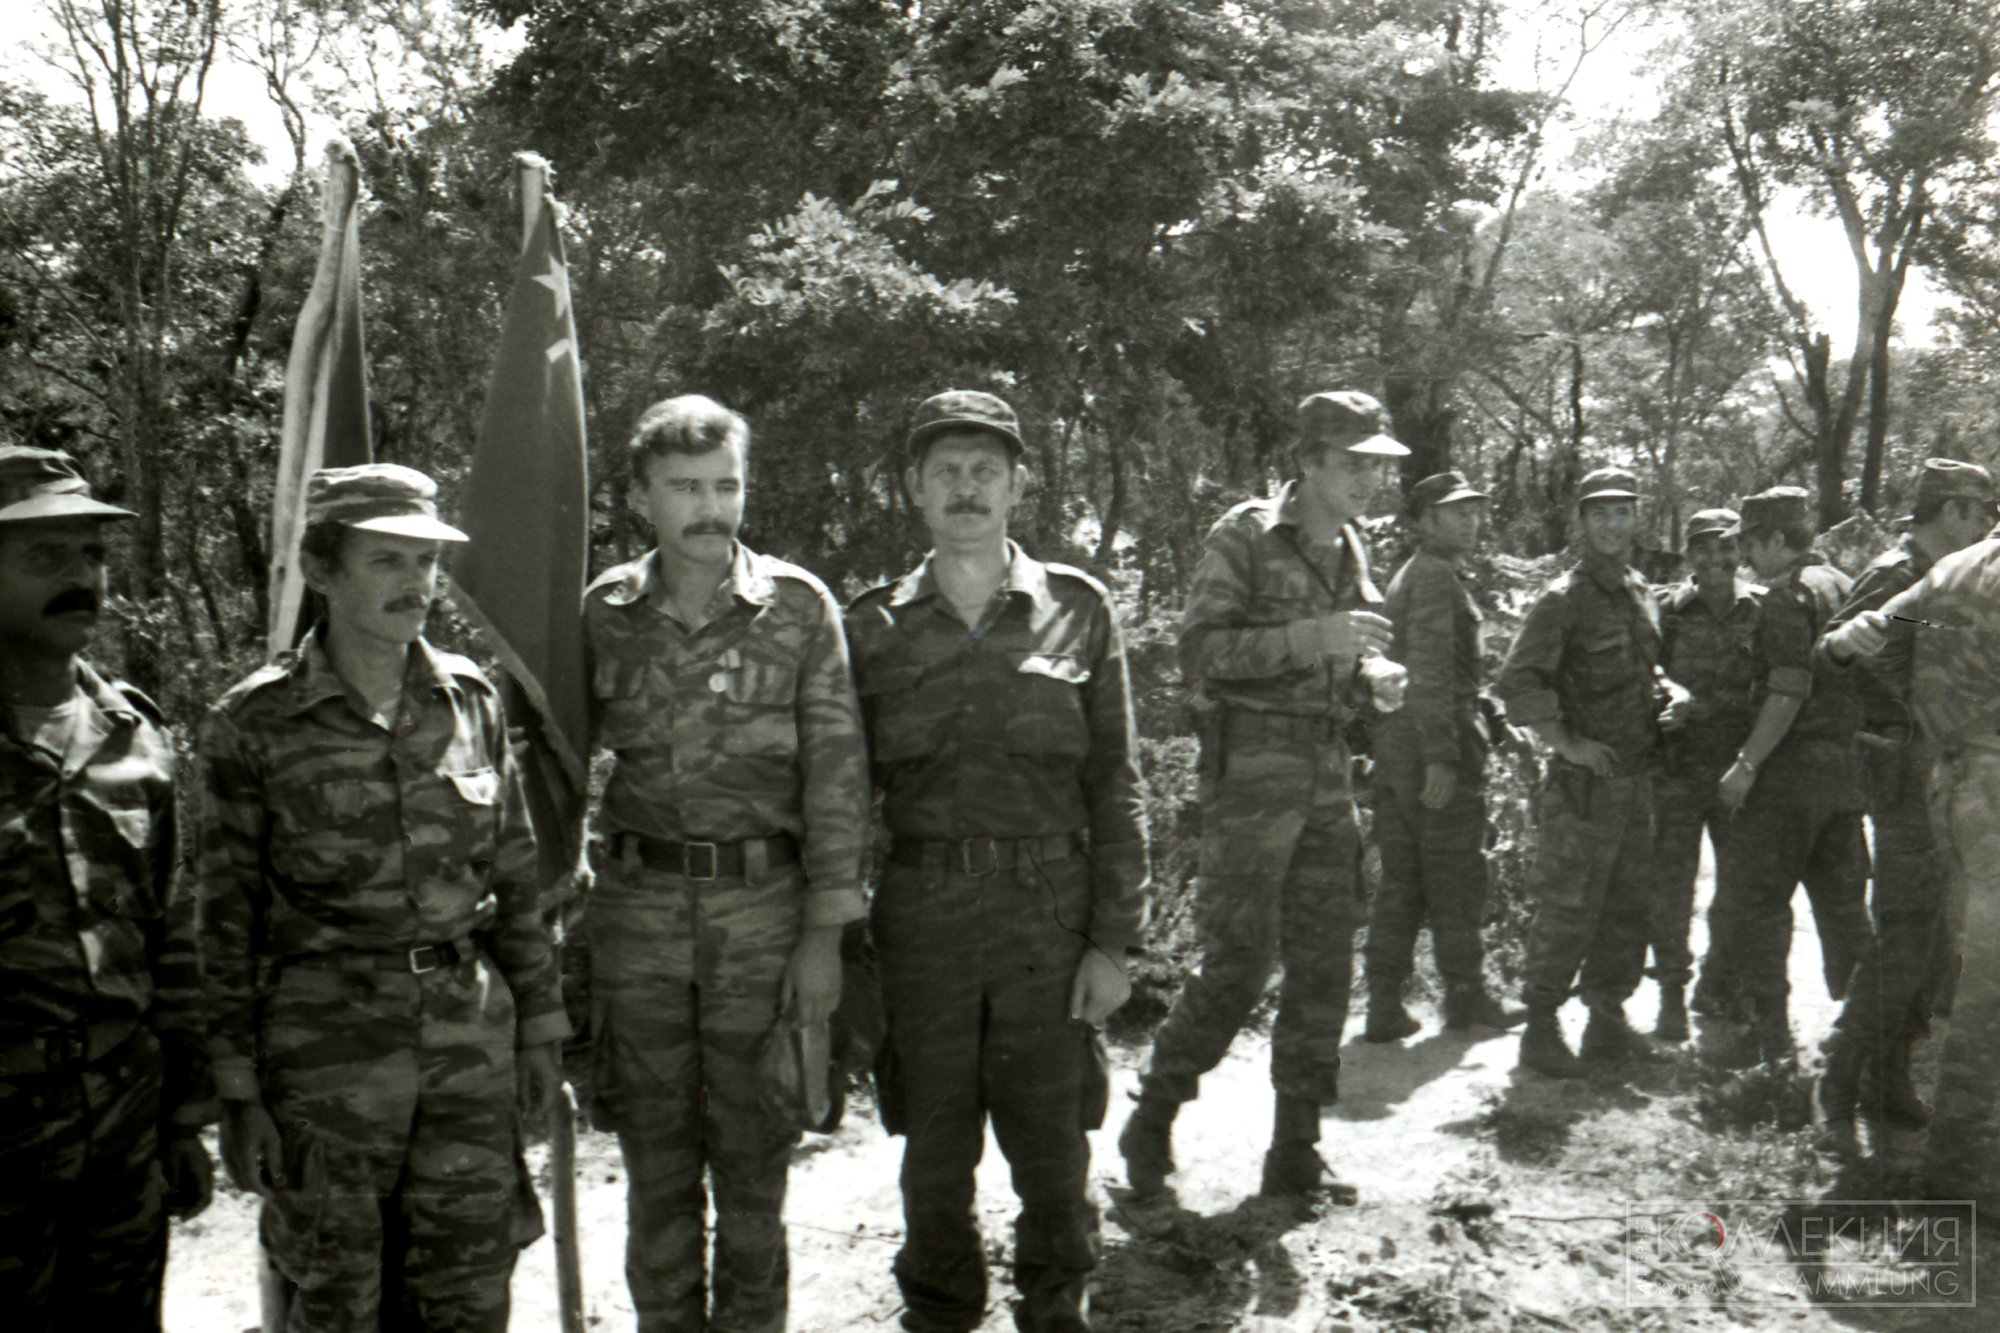 Справа налево: А. Шишов (в движении), И. Ждаркин, В. Черемухин у знамени, крайний слева — кубинец. После награждения медалью «За оборону Куито Куанавале». 1988. Фото из архива Валерия Черёмухина